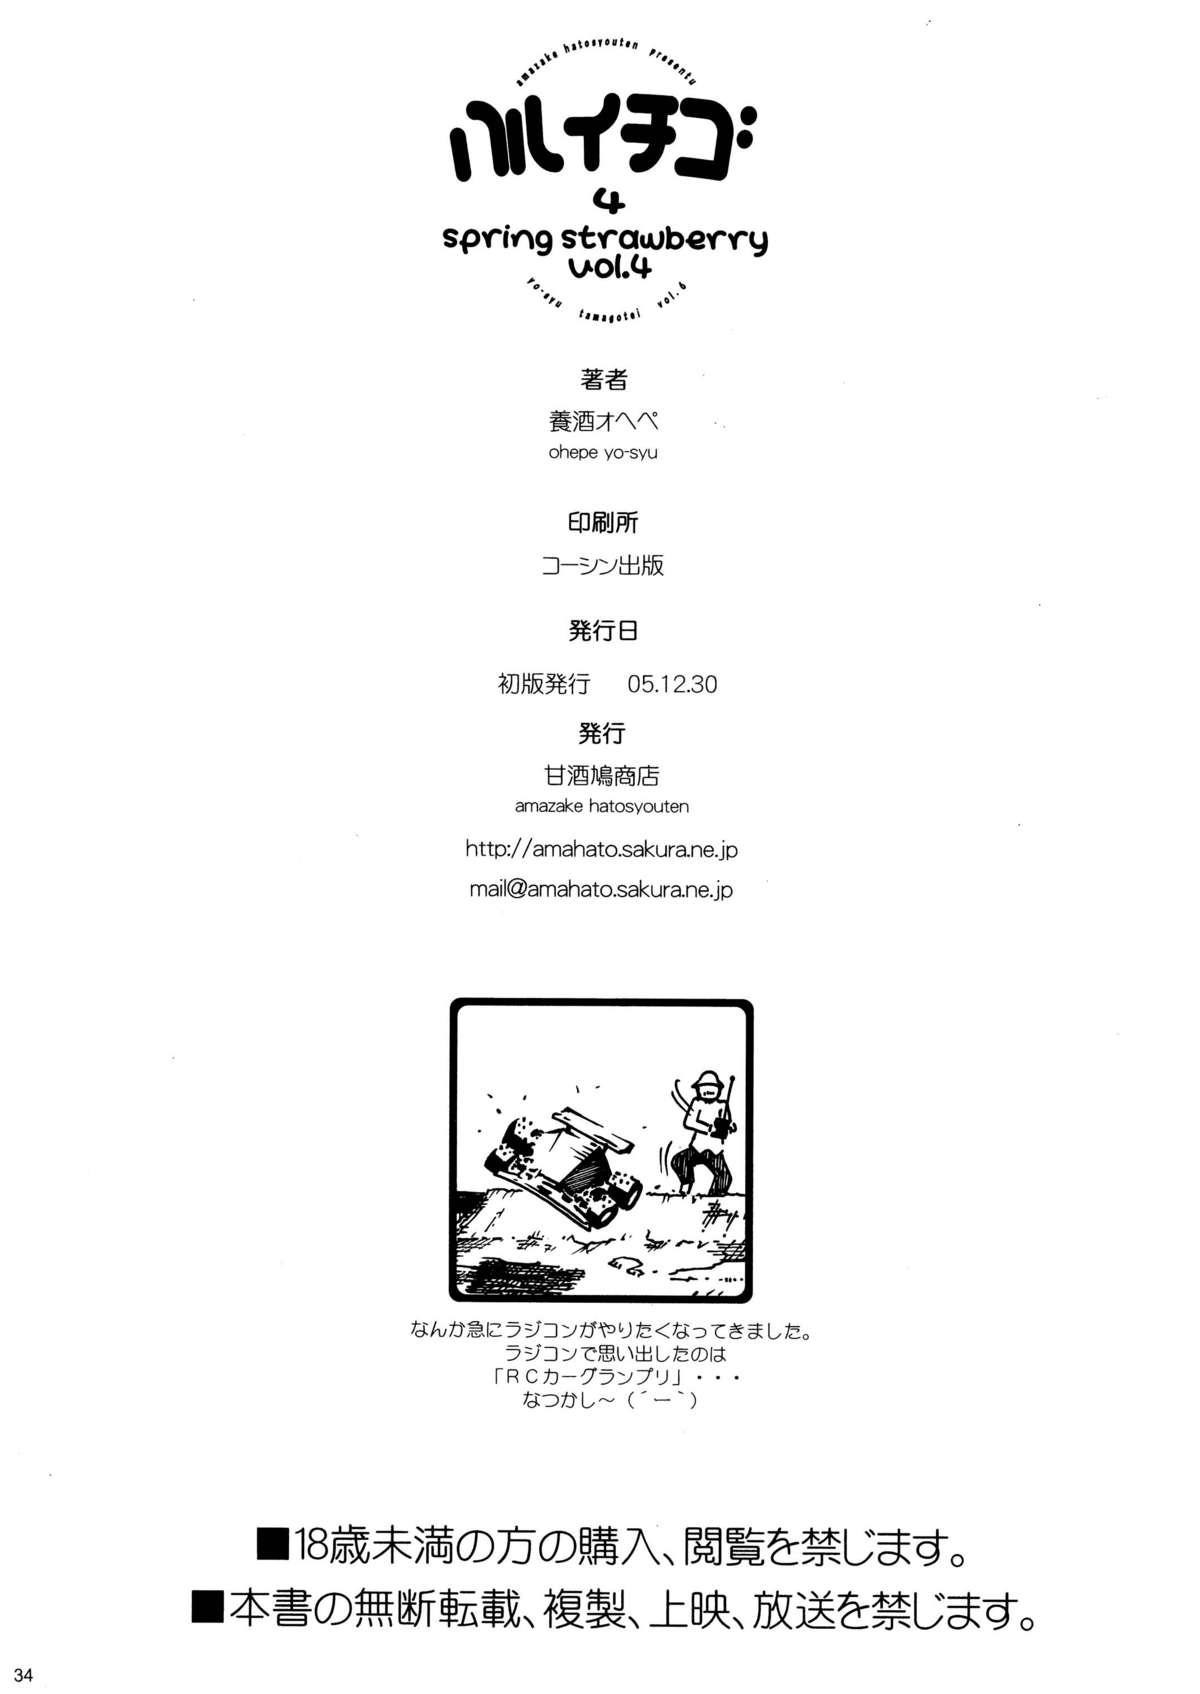 Haru Ichigo Vol. 4 - Spring Strawberry Vol. 4 33